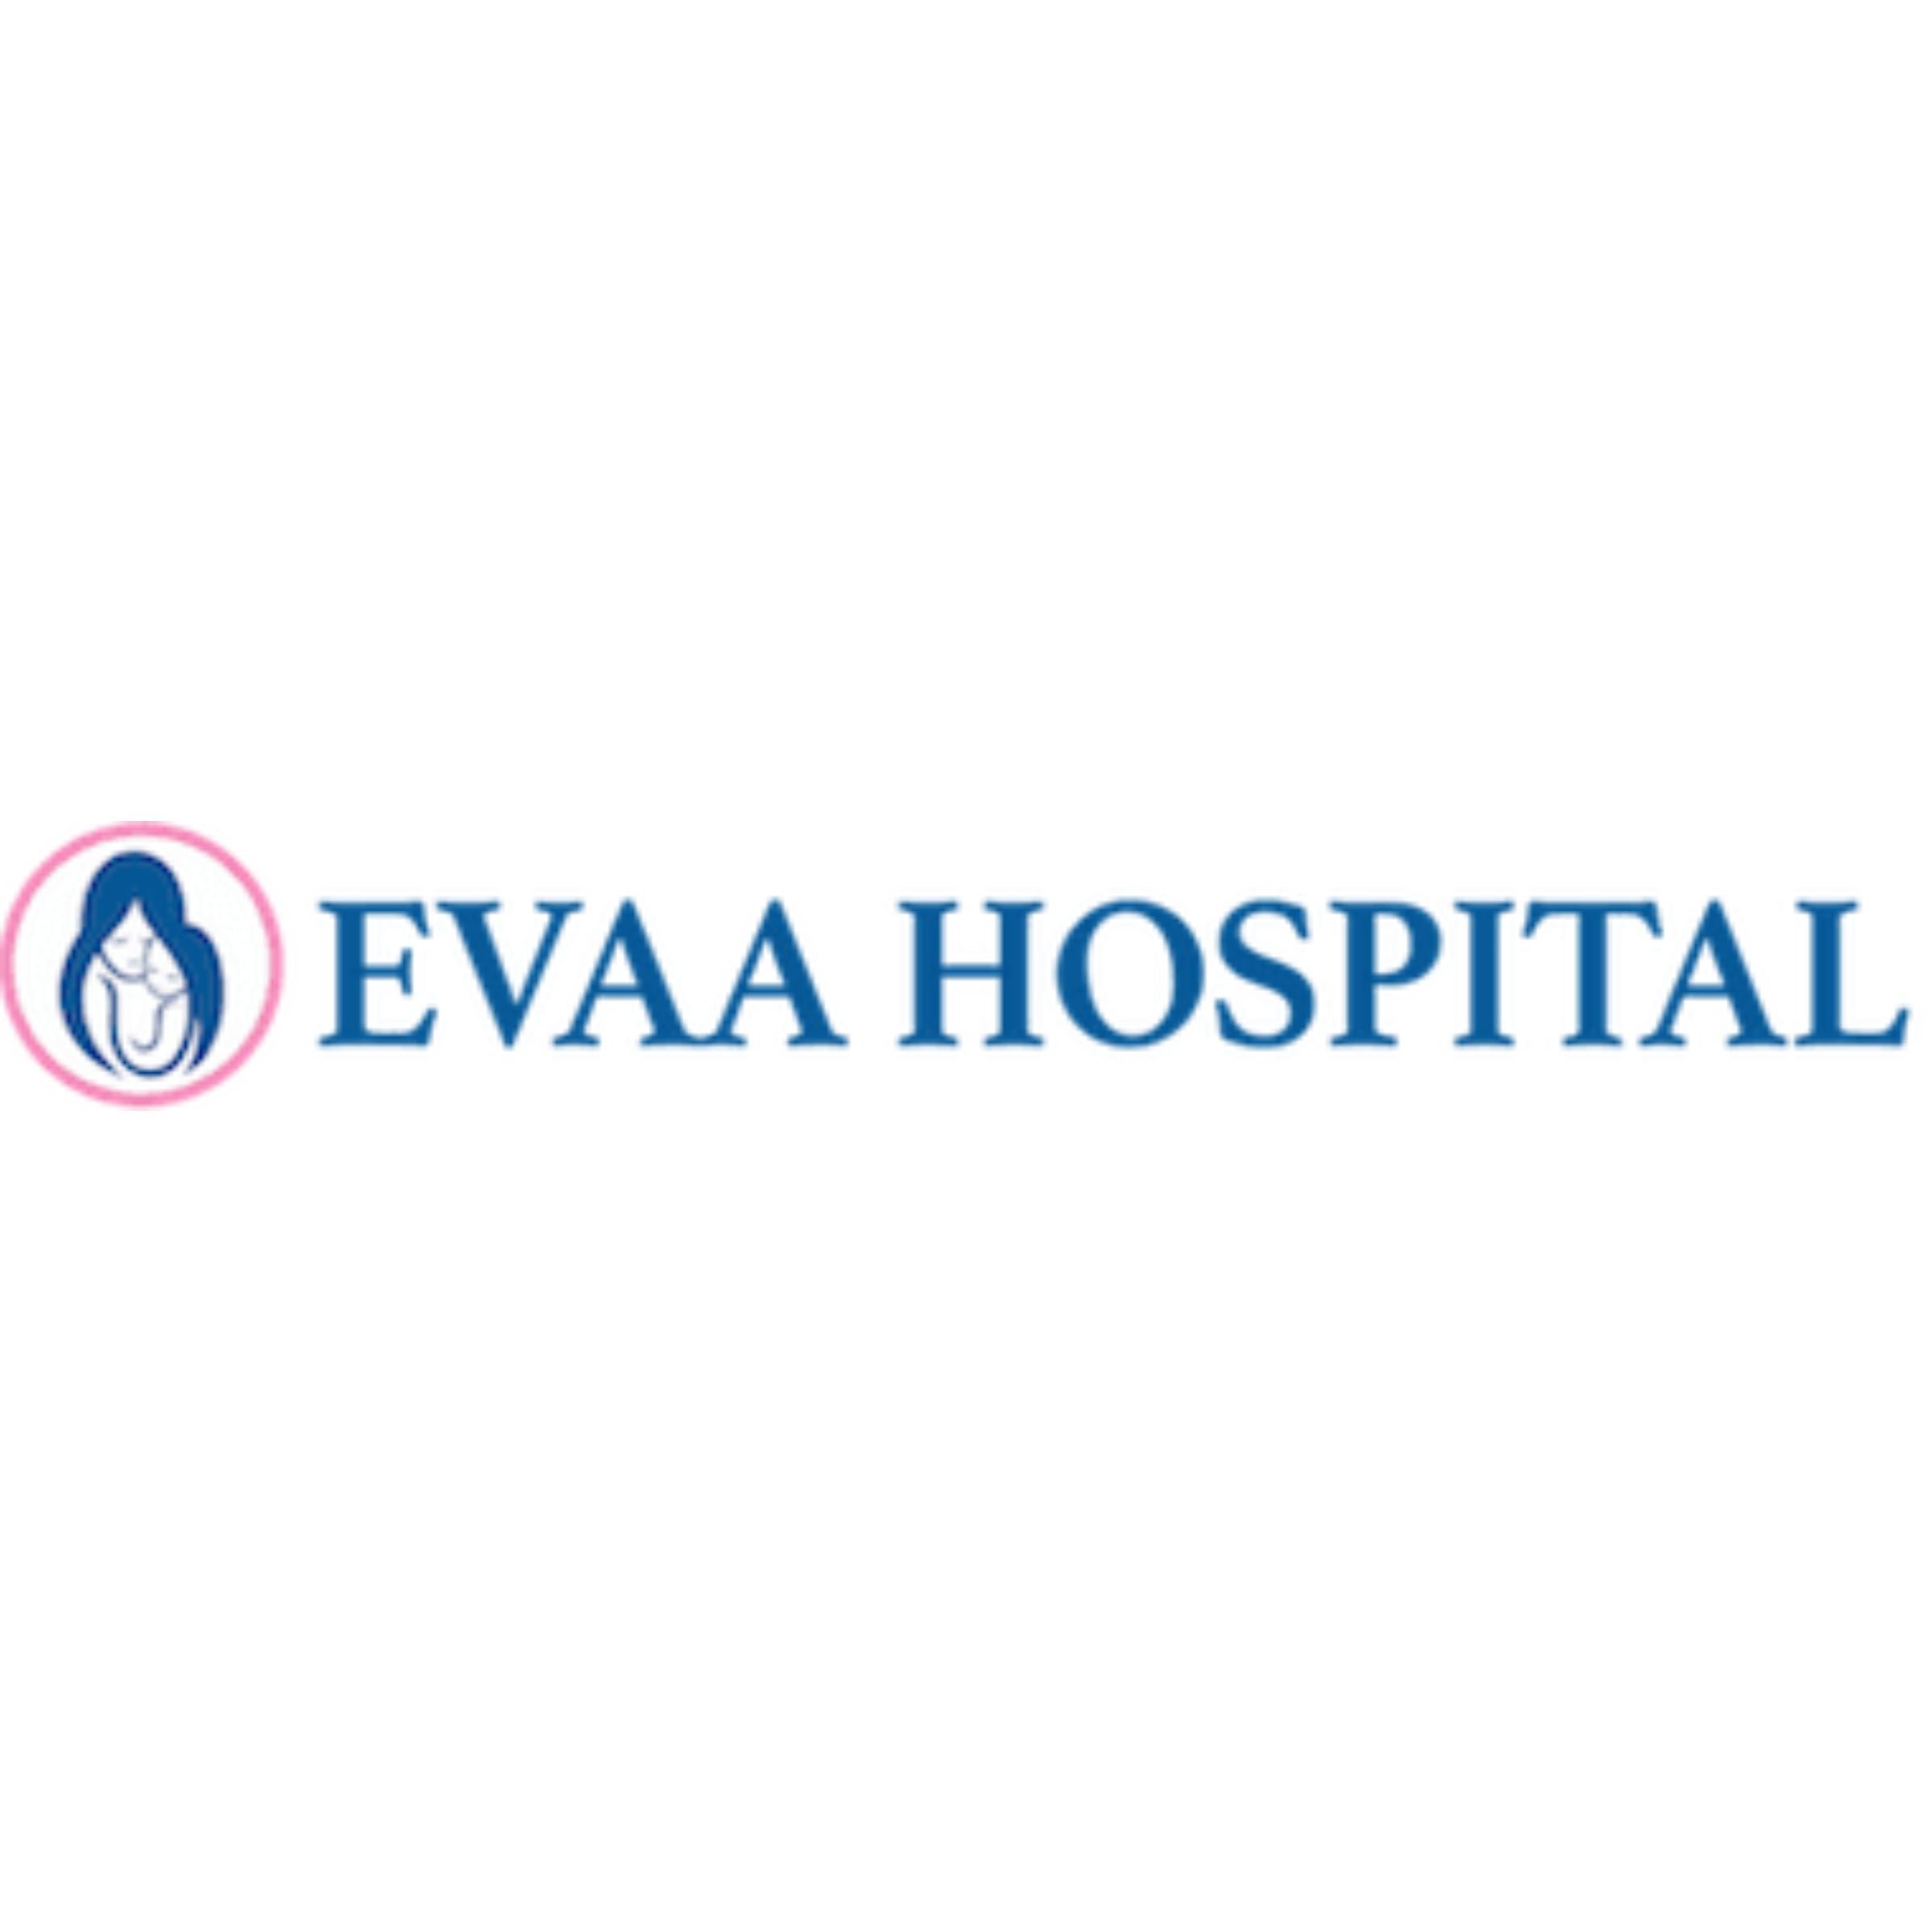 Evva hospital logo